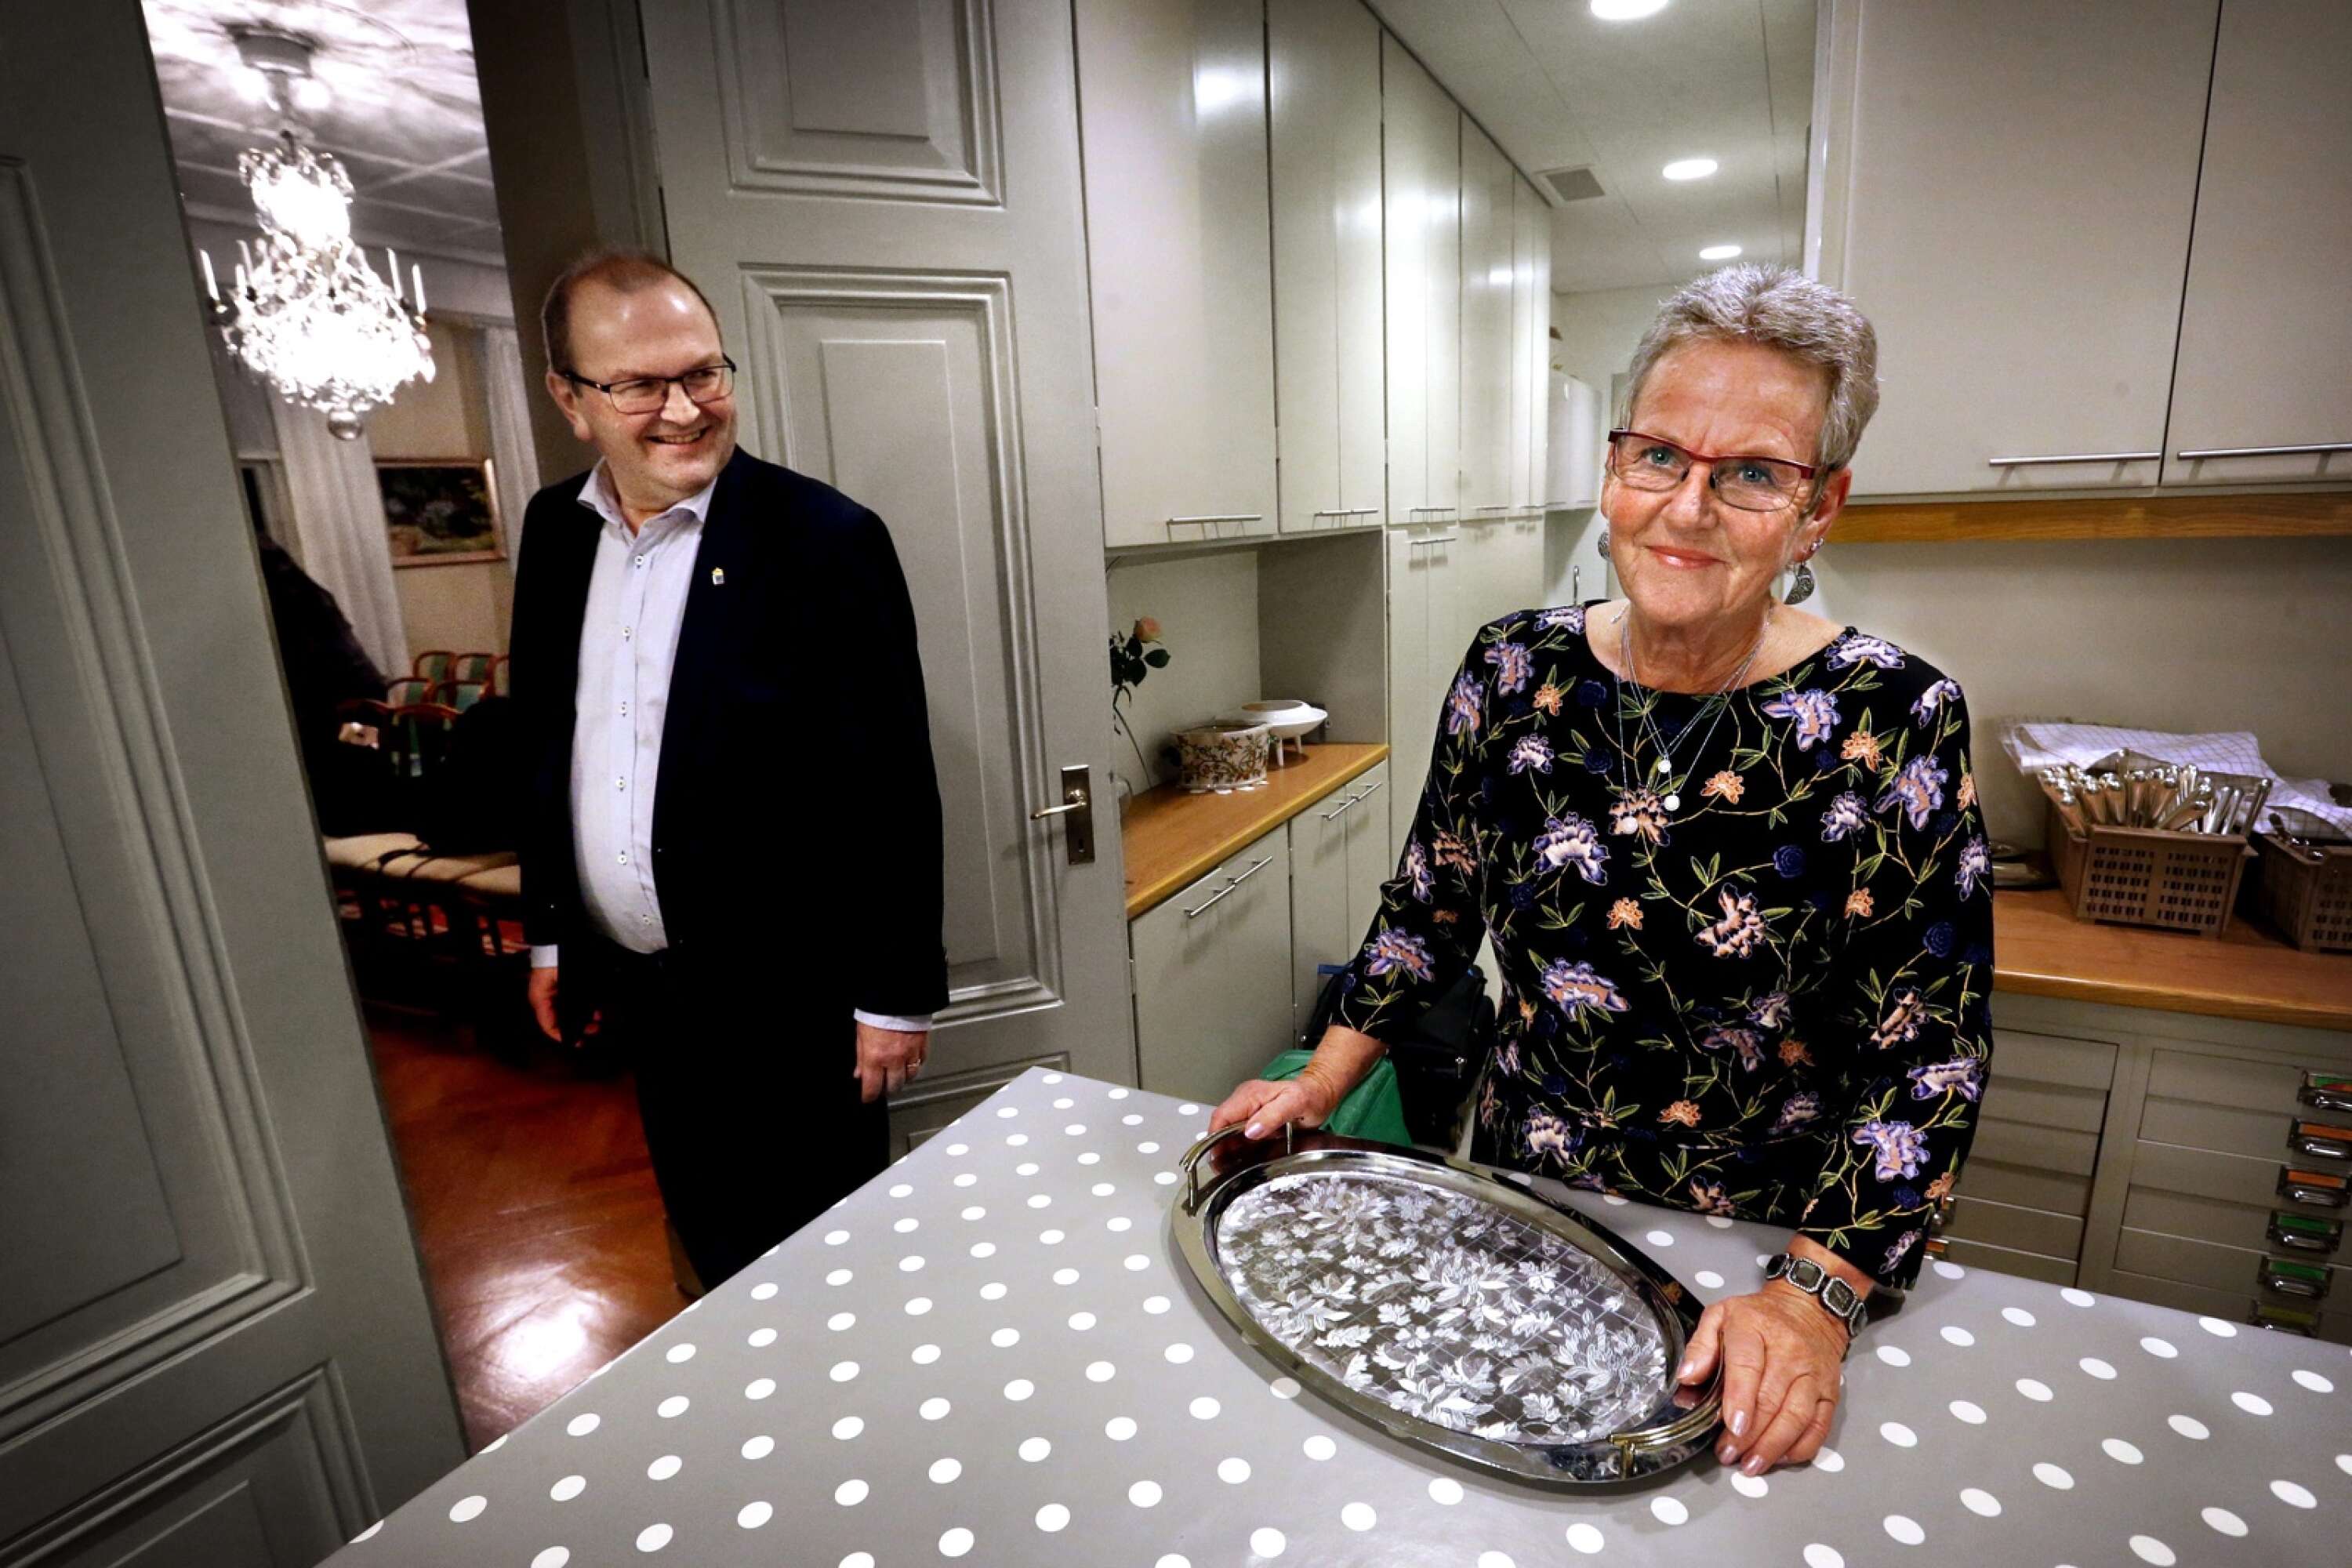 Gunn Stavvik jobbade som husfru på residenset mellan 2004 och 2020. Sex av åren jobbade hon ihop med landshövding Kenneth Johansson och hans fru Viola. 